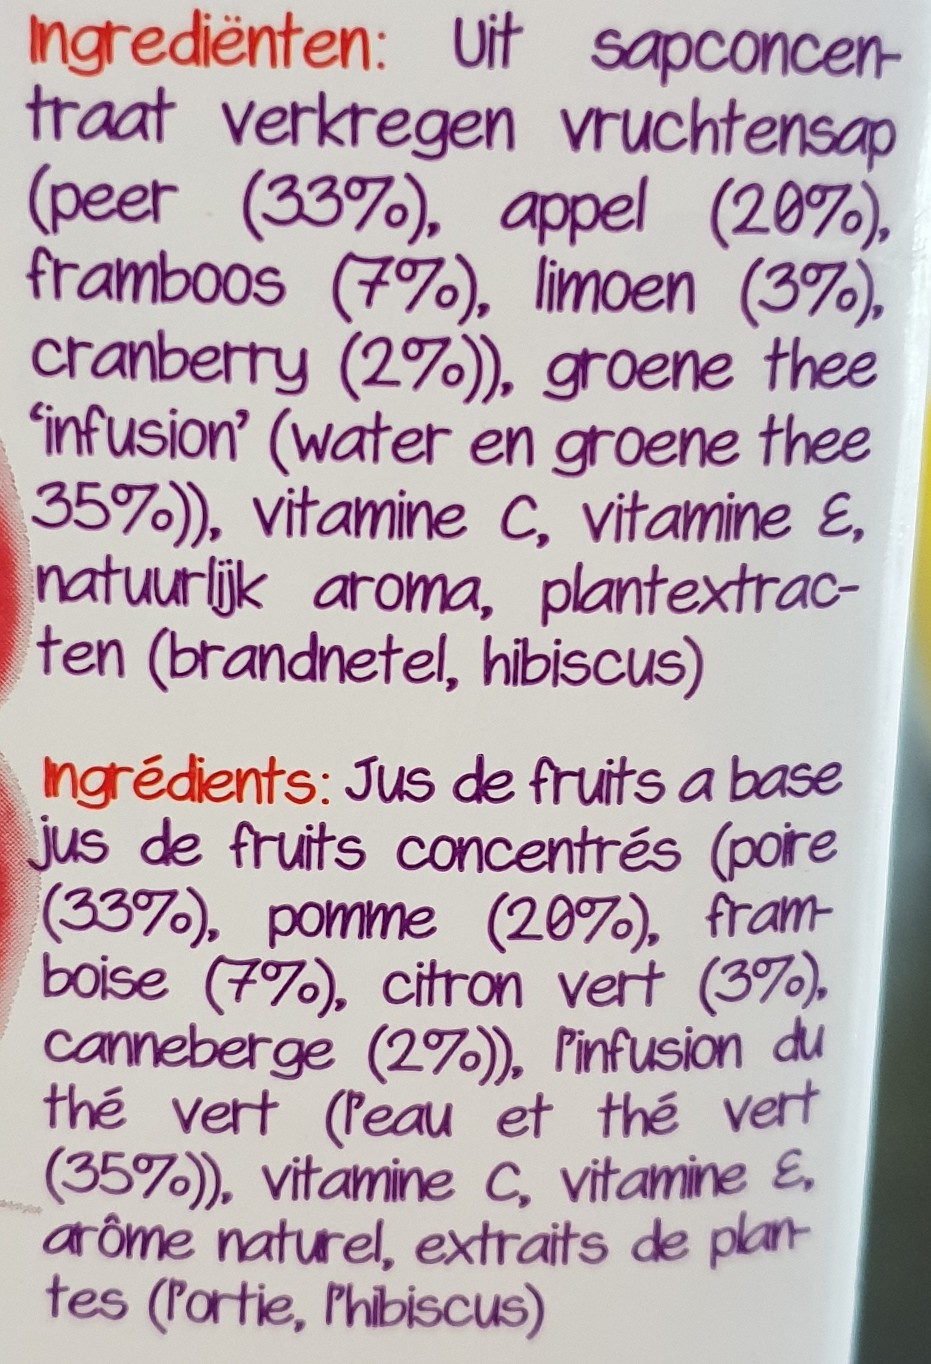 Daily Detox Framboise et thé vert - Ingredientes - fr